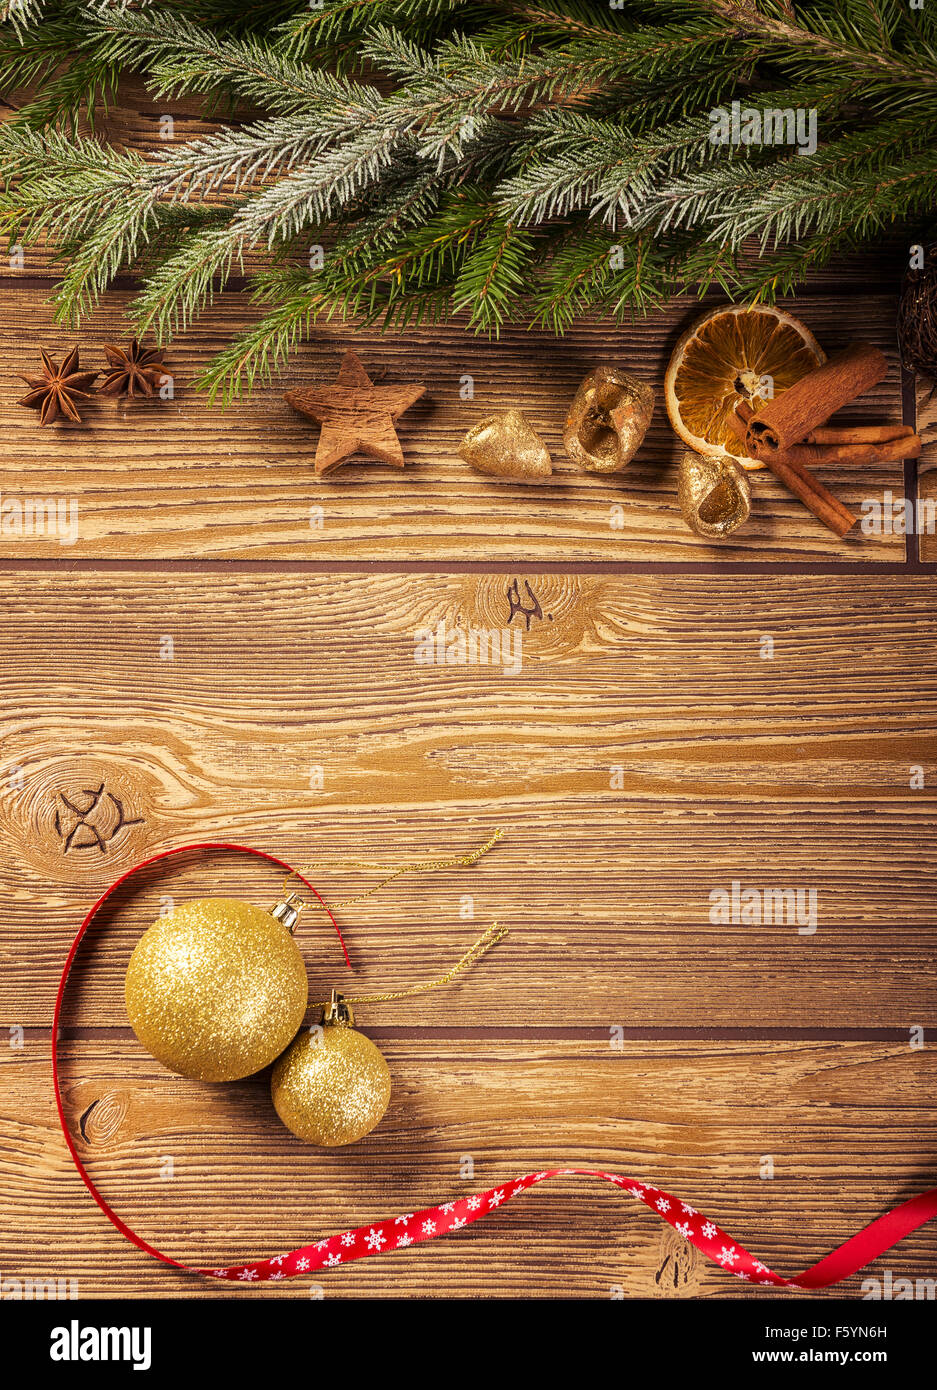 Décoration de Noël, fond de bois : ornements, épices, boule de noël et ruban Banque D'Images